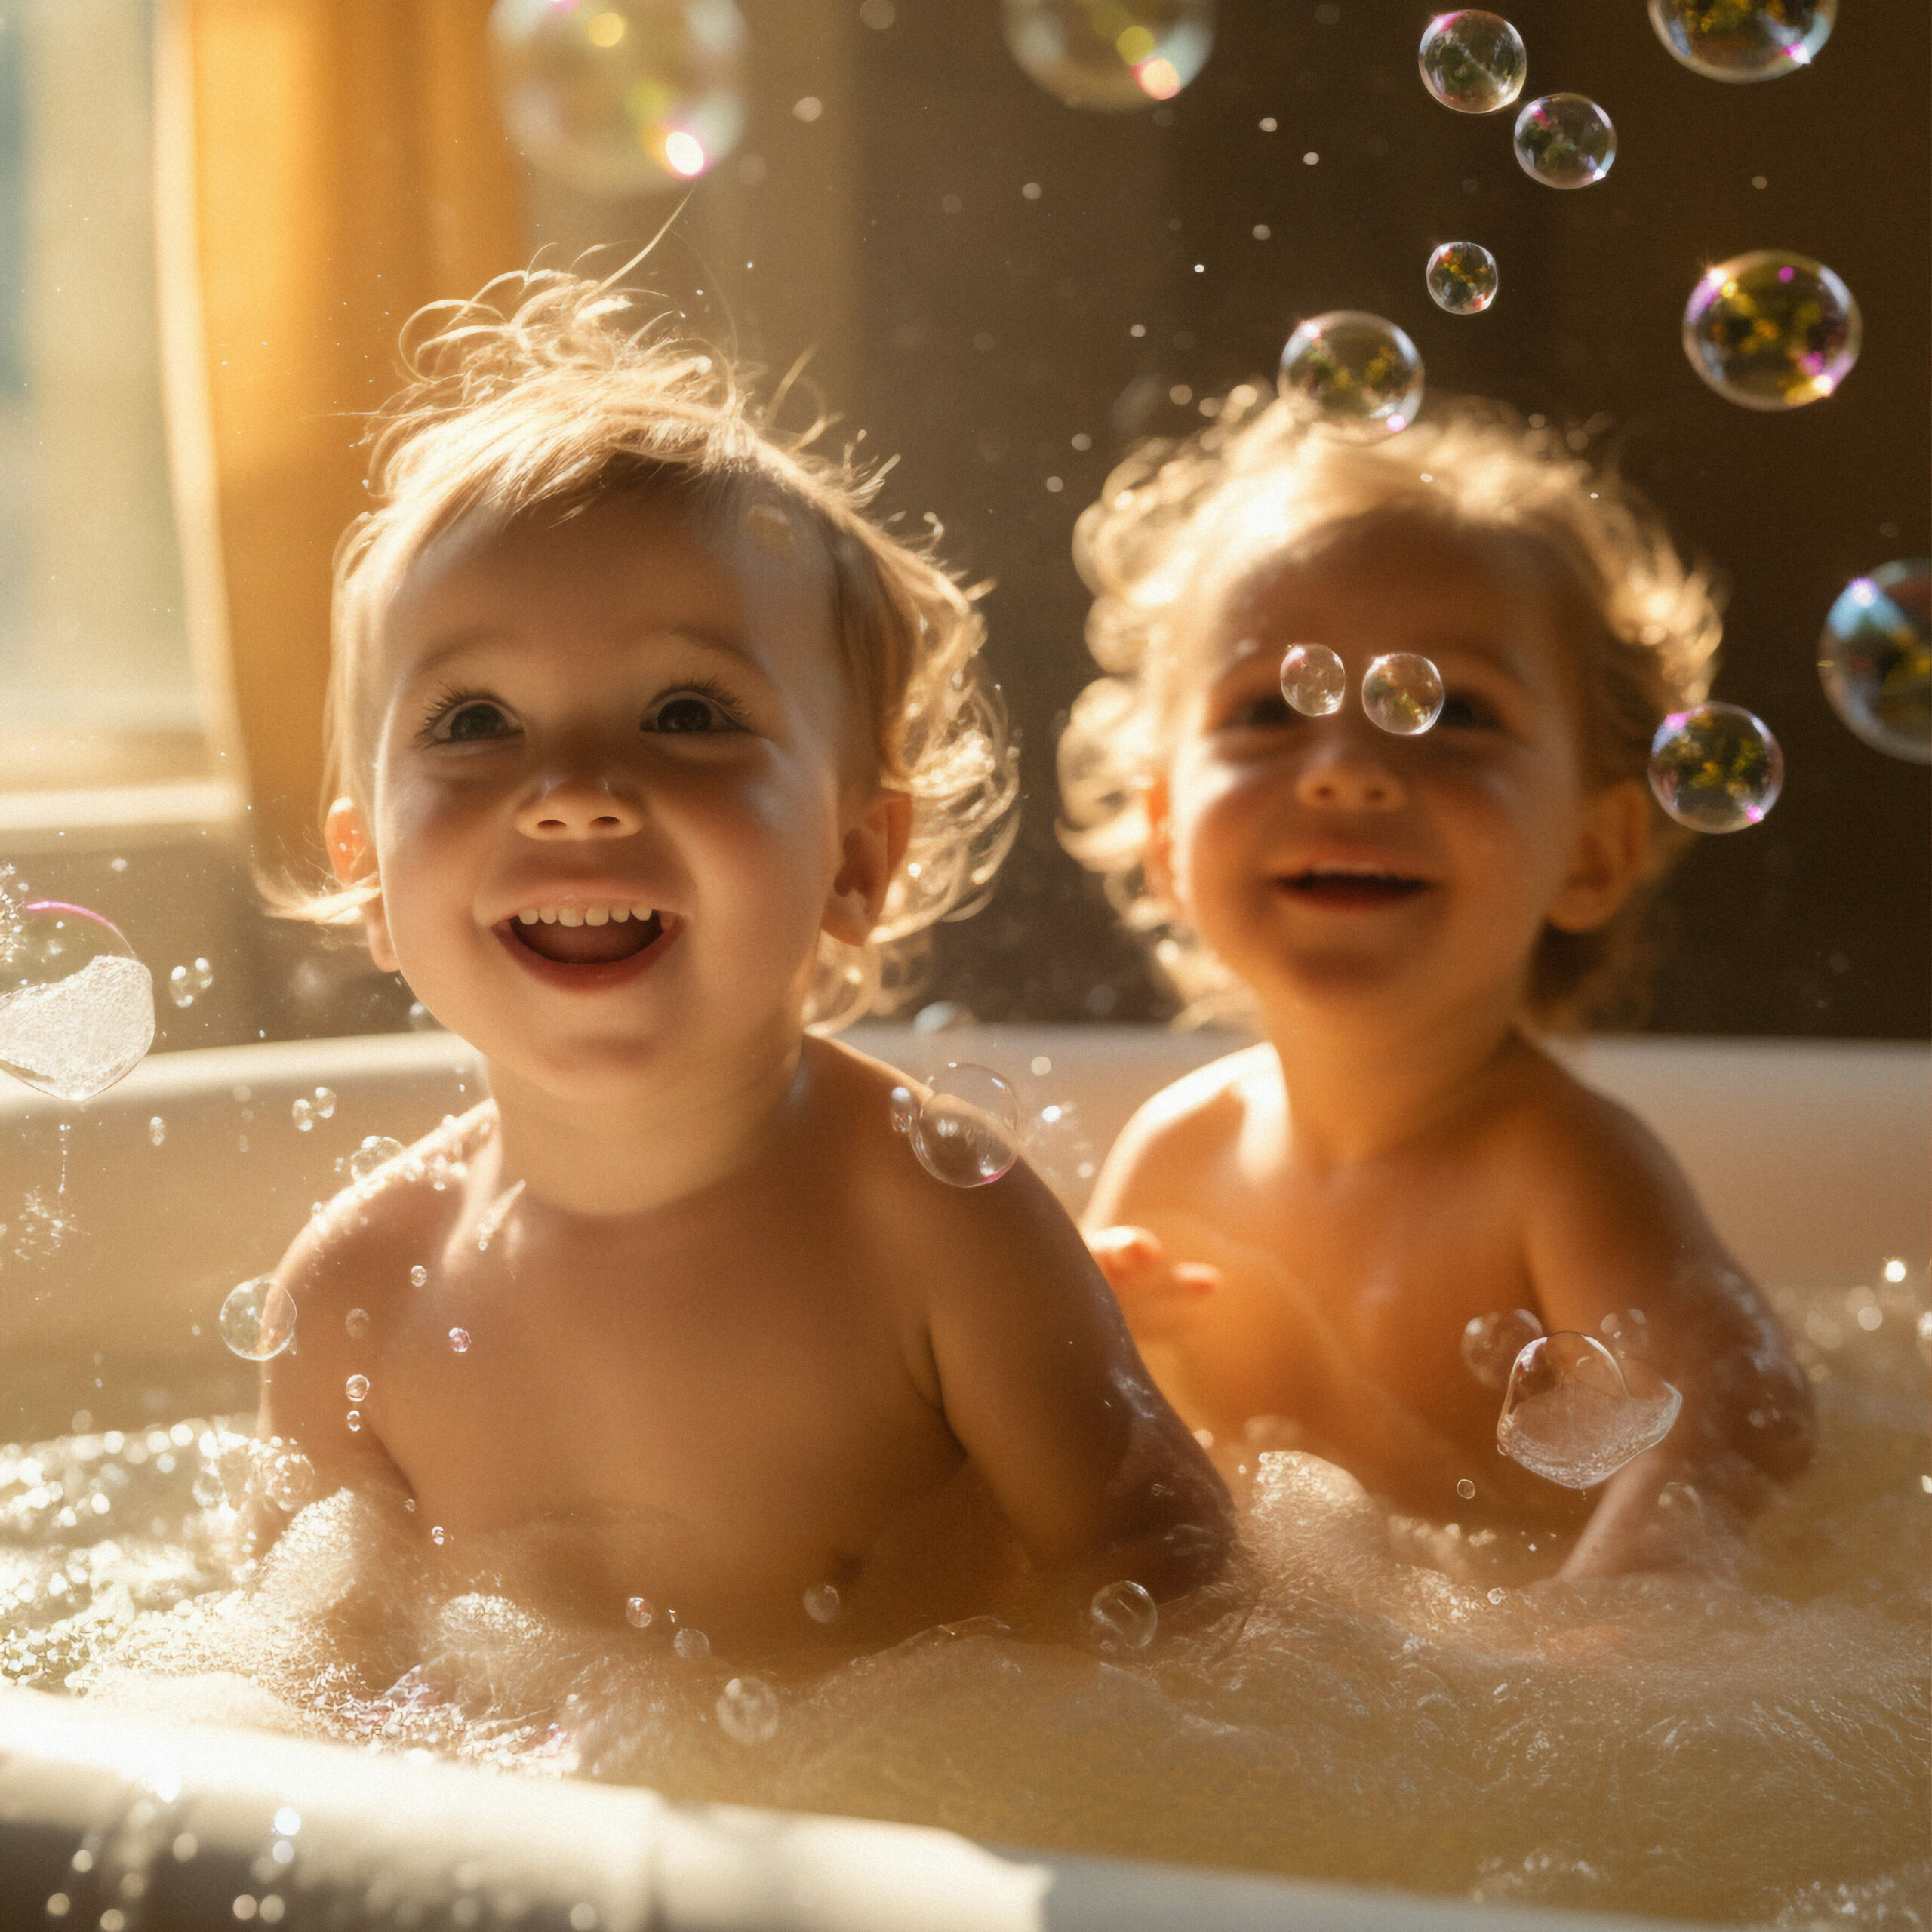 Kids in a bubble bath